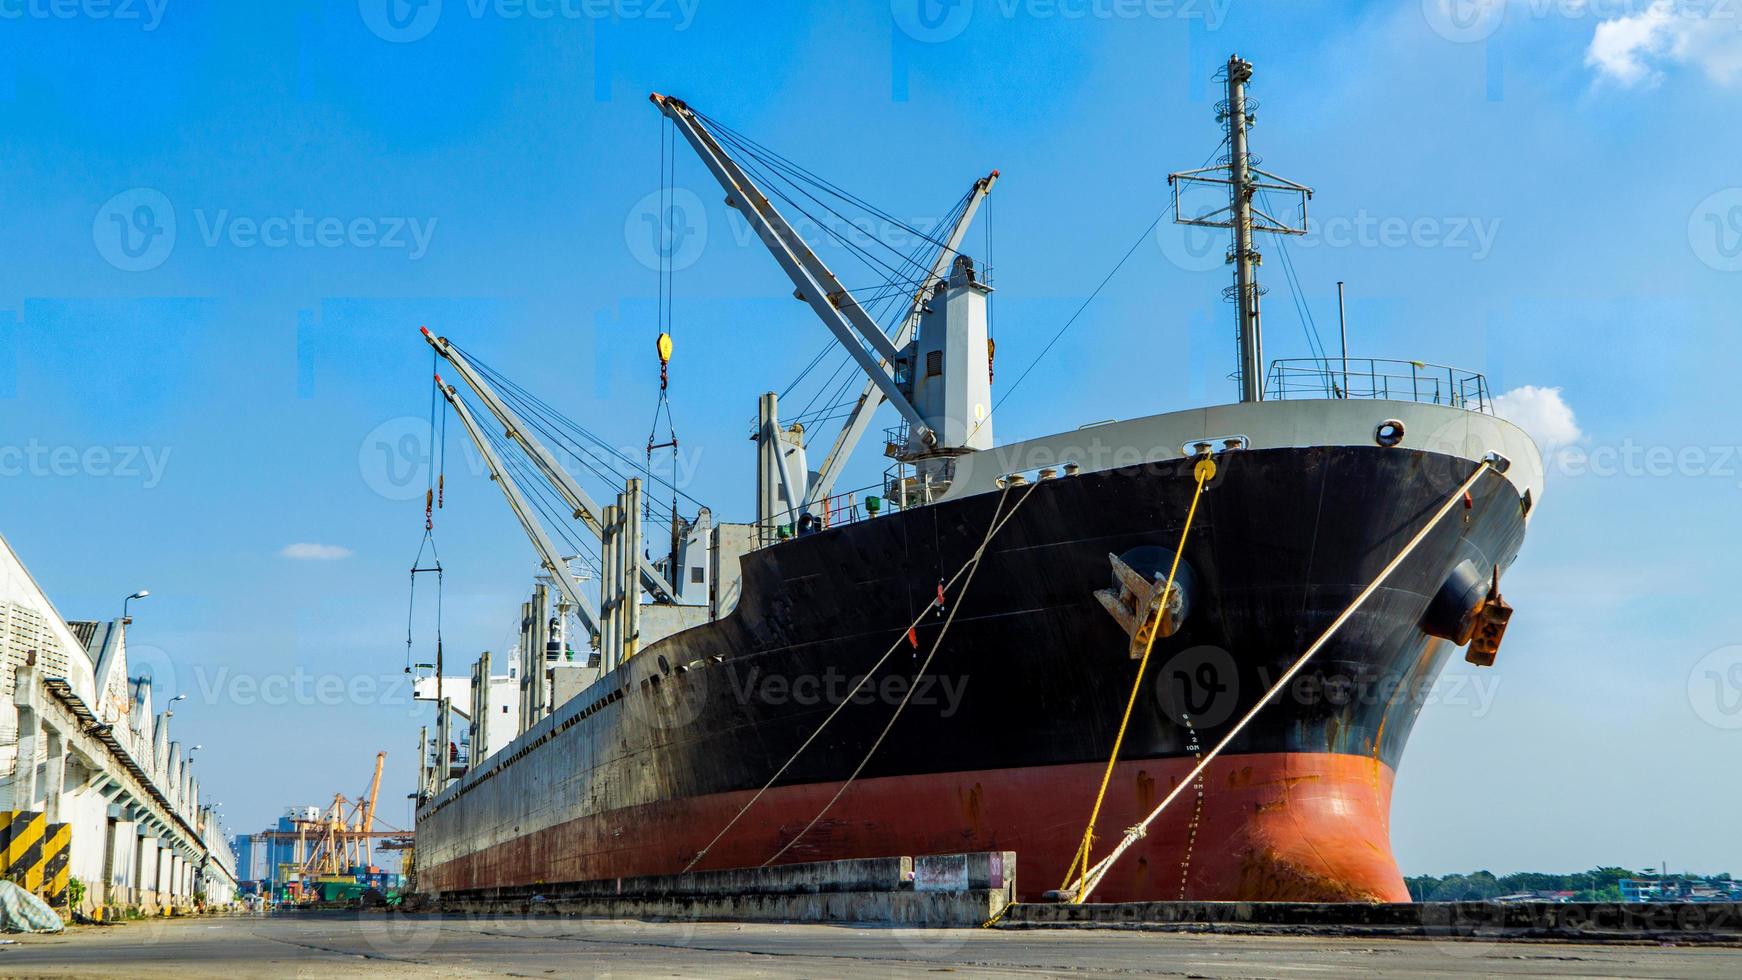 container laden in een vrachtschip met industriële kraan. containerschip in logistiek bedrijf voor import en export. industrie en transport concept. foto